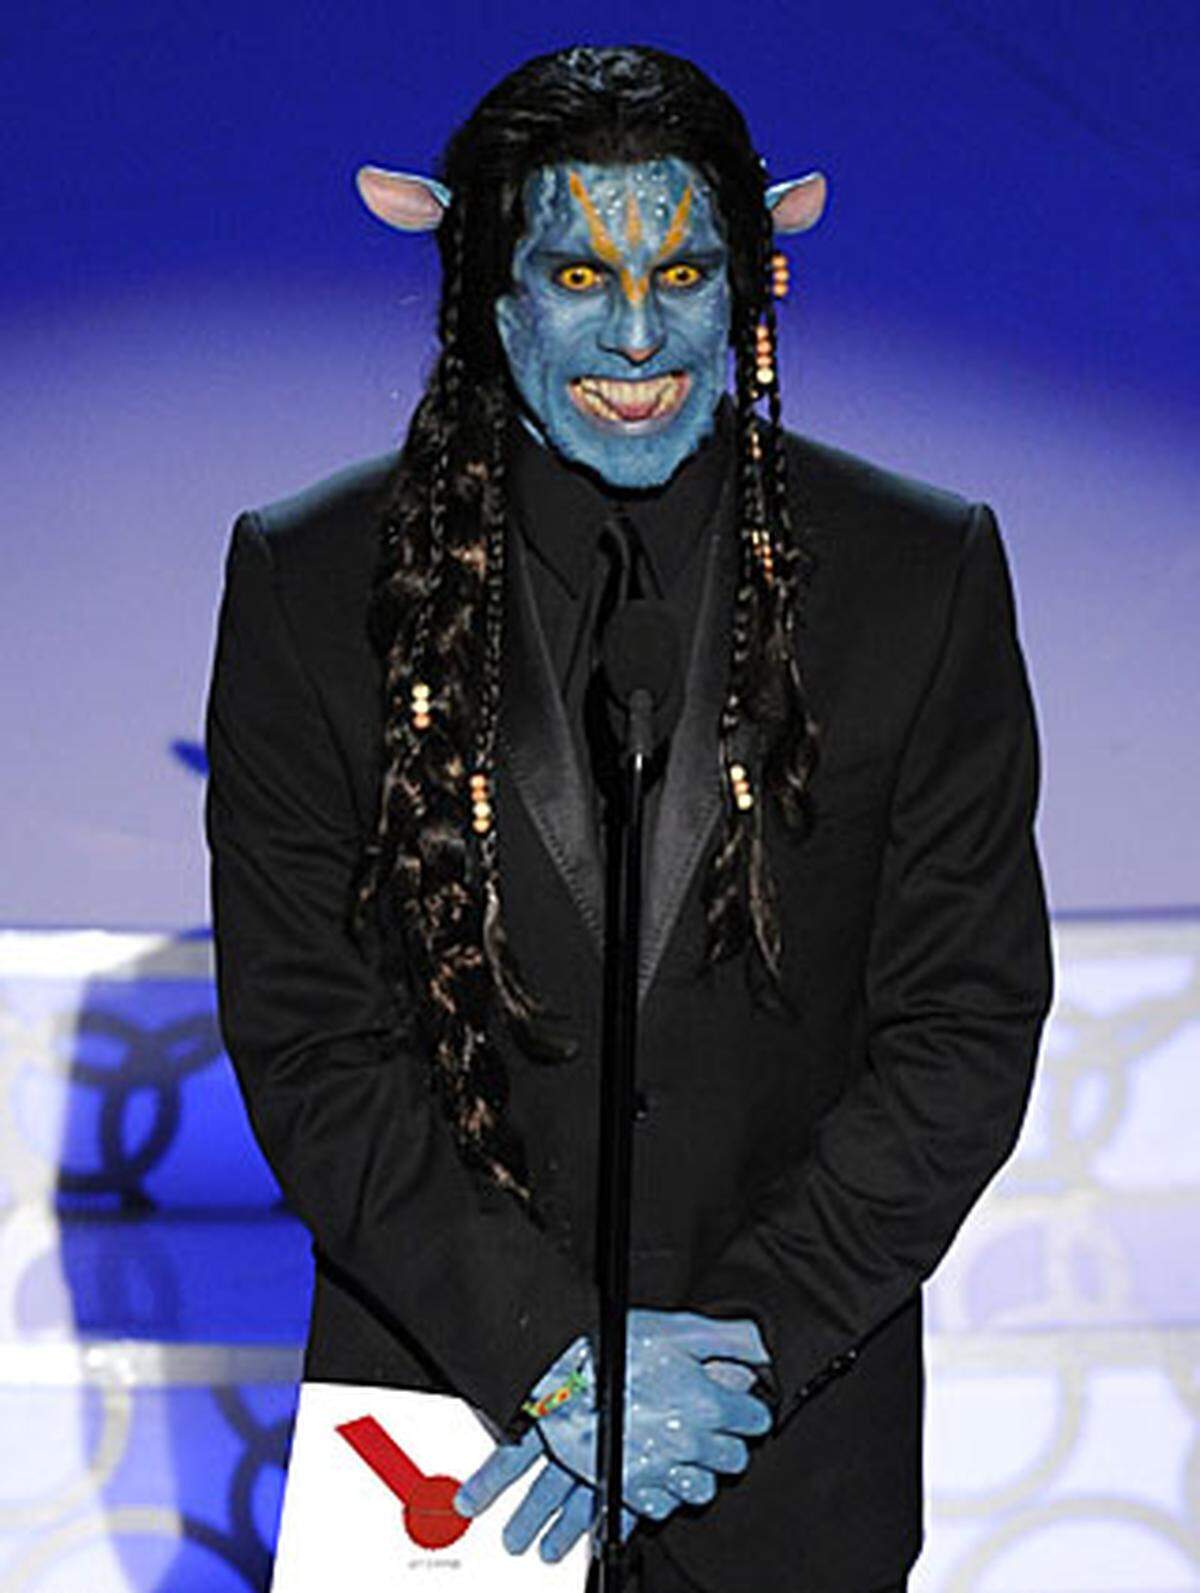 Über "Avatar" lustig machte sich Ben Stiller, der den Preis für das Beste Make-Up. In dieser Kategorie war Camerons Streifen aber gar nicht nominiert. Die Auszeichnung ging an "Star Trek" und die Maskenbildner Barney Burman, Mindy Hall und Joel Harlow.